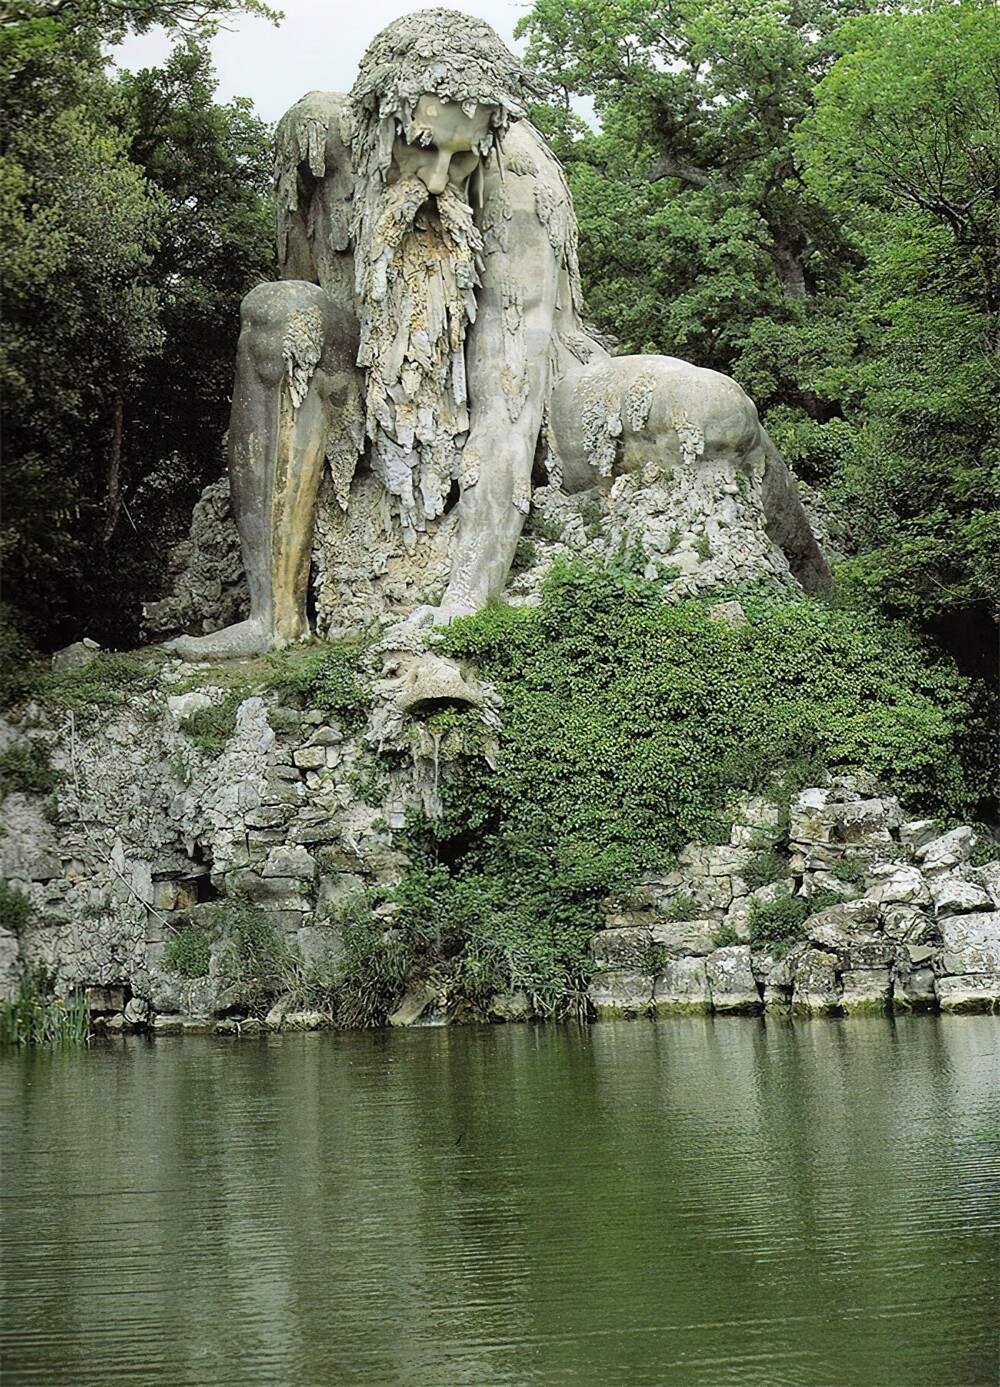 1. Скульптура «Колосс». Создана итальянским скульптором Джамболонья в конце 1500-х годов как символ Апеннинских гор Италии